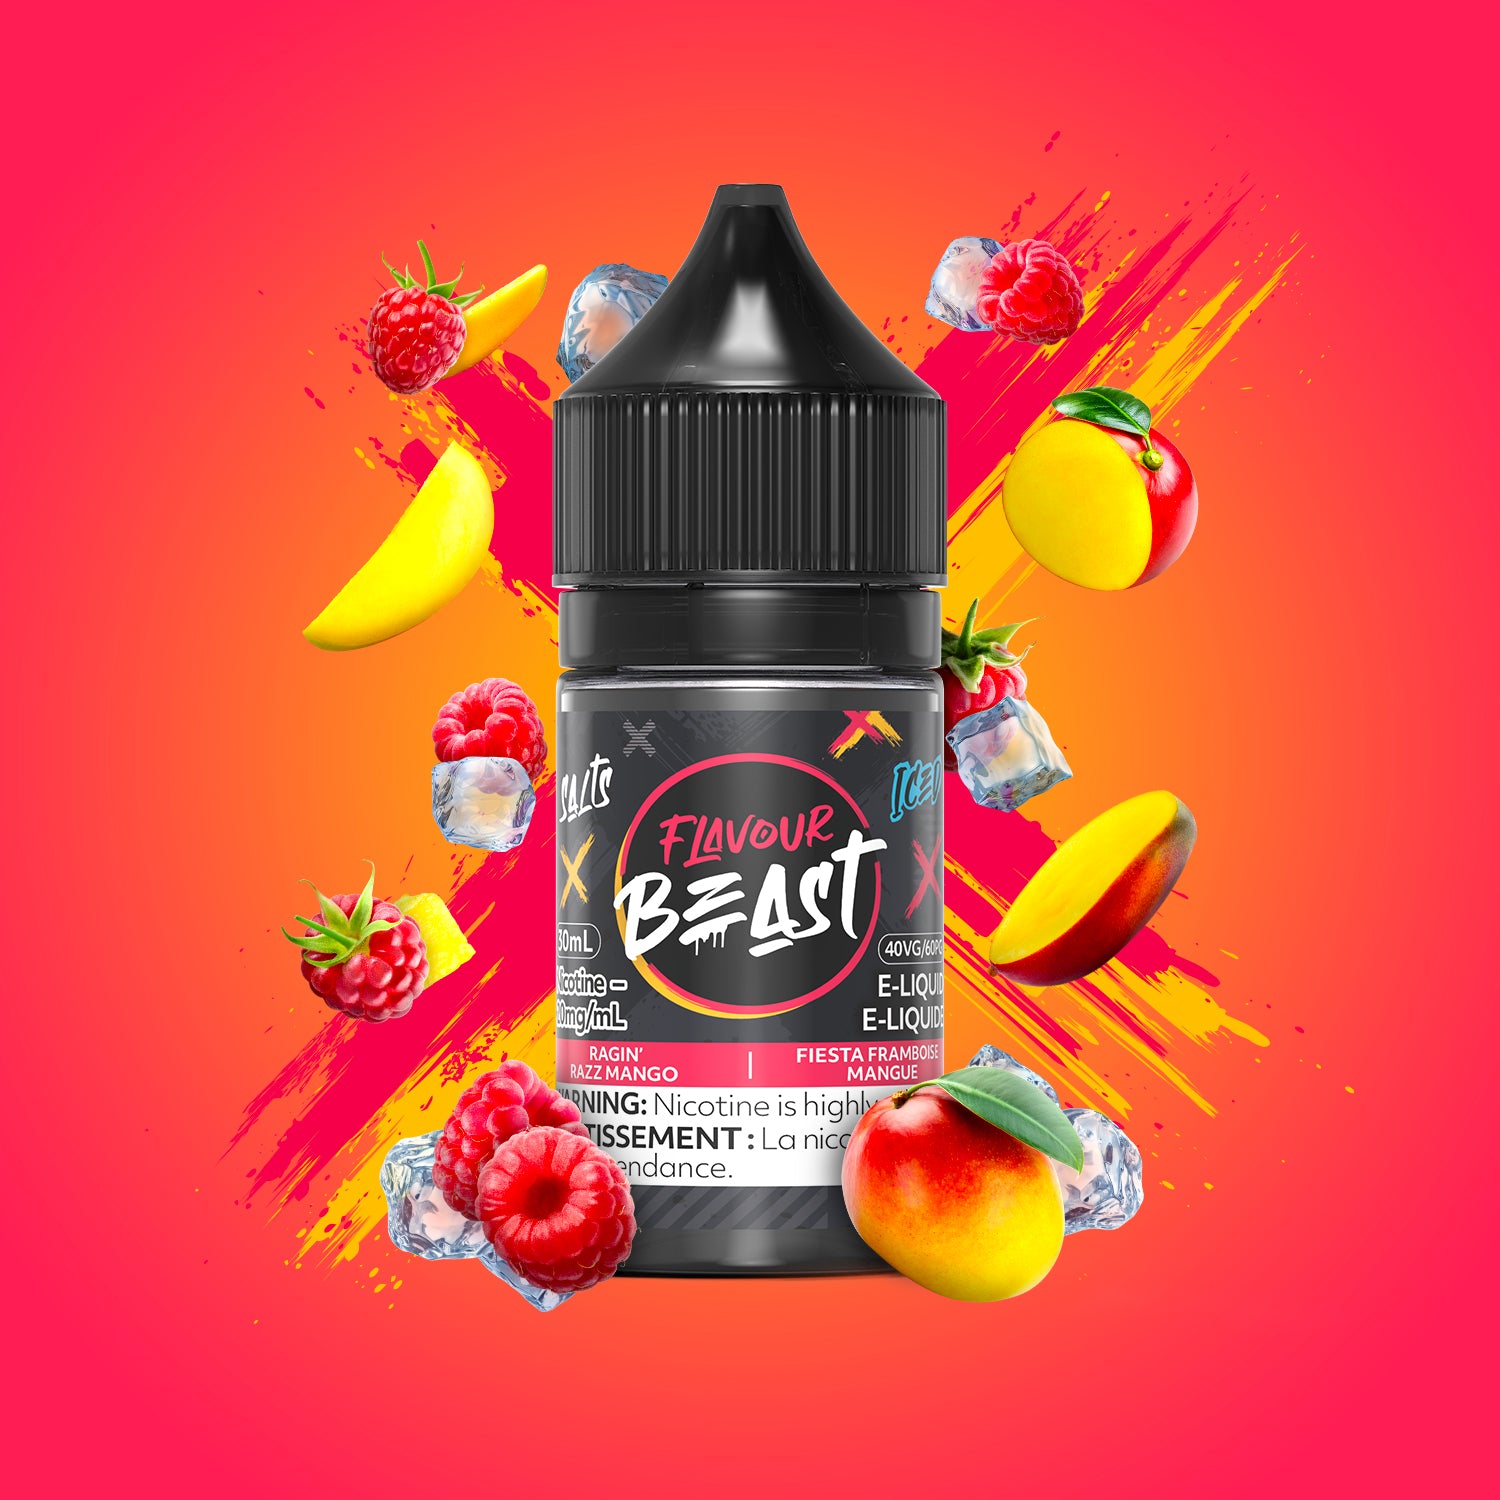 RAGIN' RAZZ MANGO - Flavour Beast E-Liquid - 30ml - EXCISED